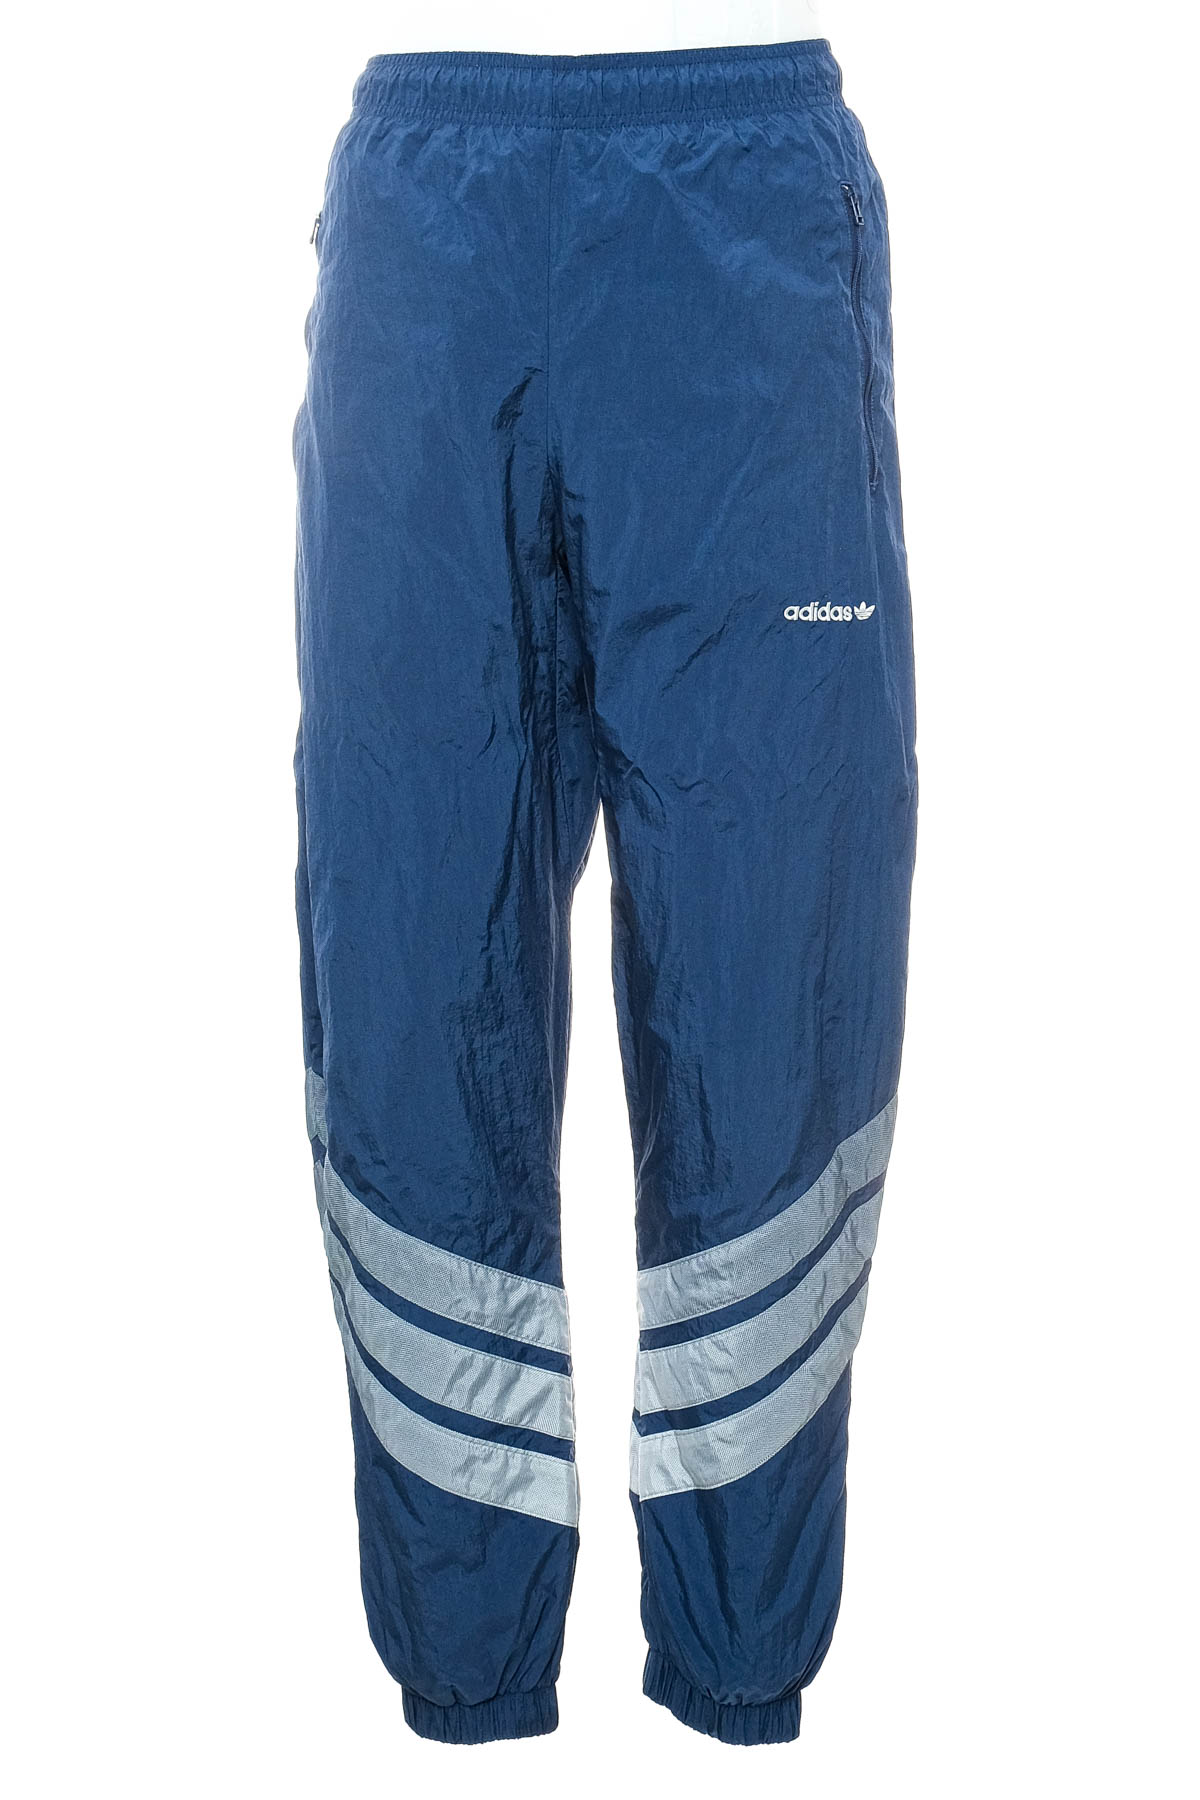 Αθλητικά παντελόνια ανδρών - Adidas - 0